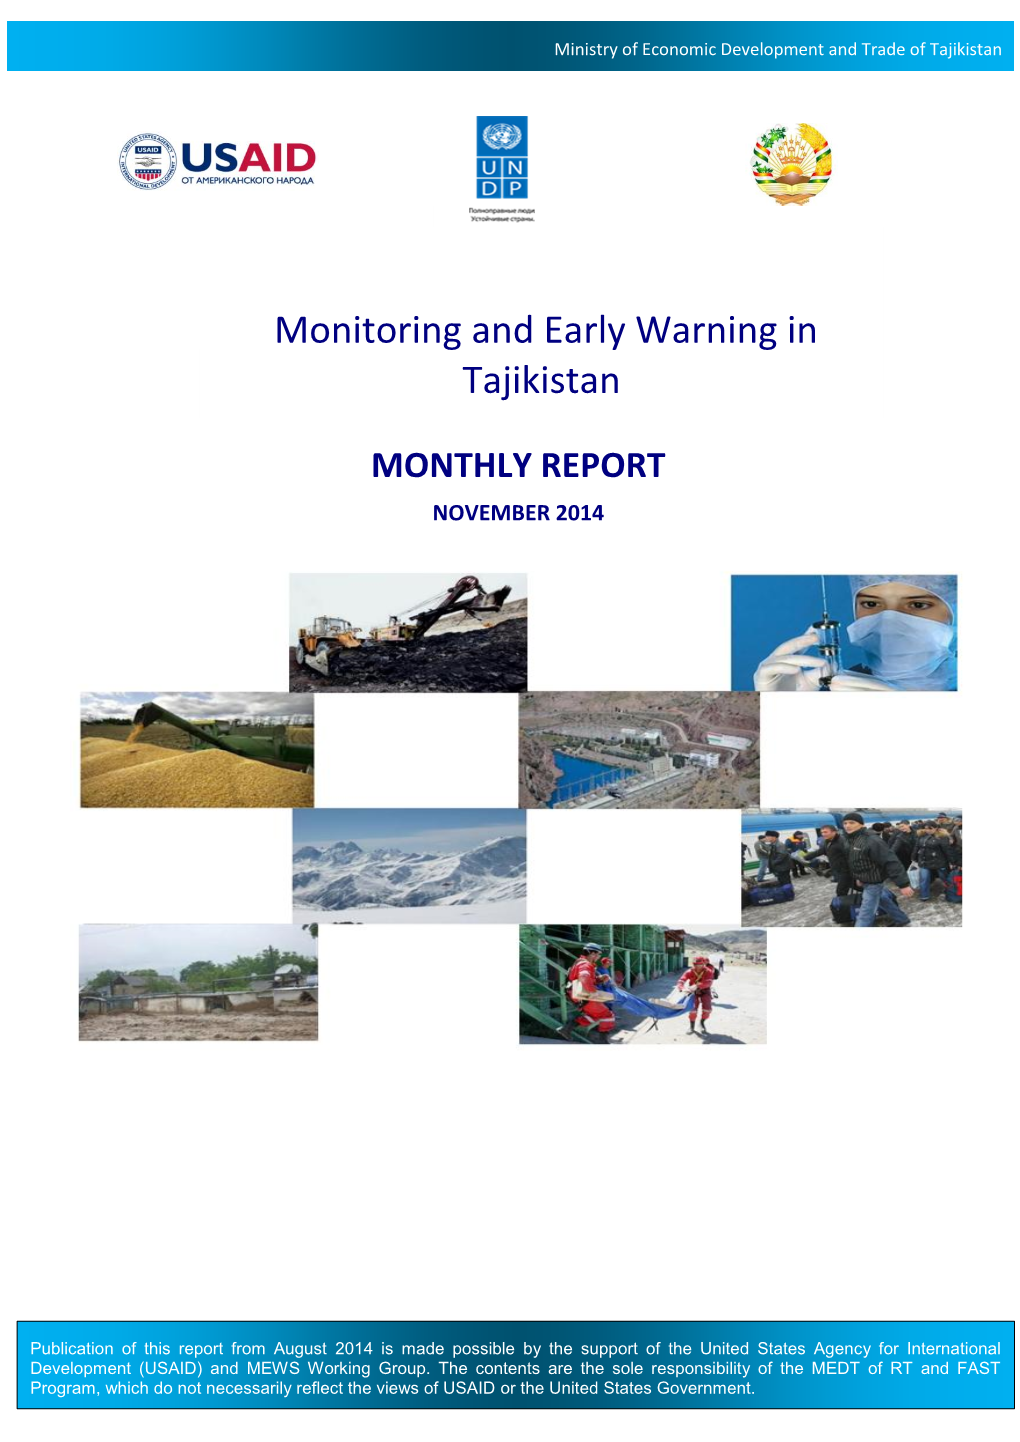 Monitoring and Early Warning in Tajikistan